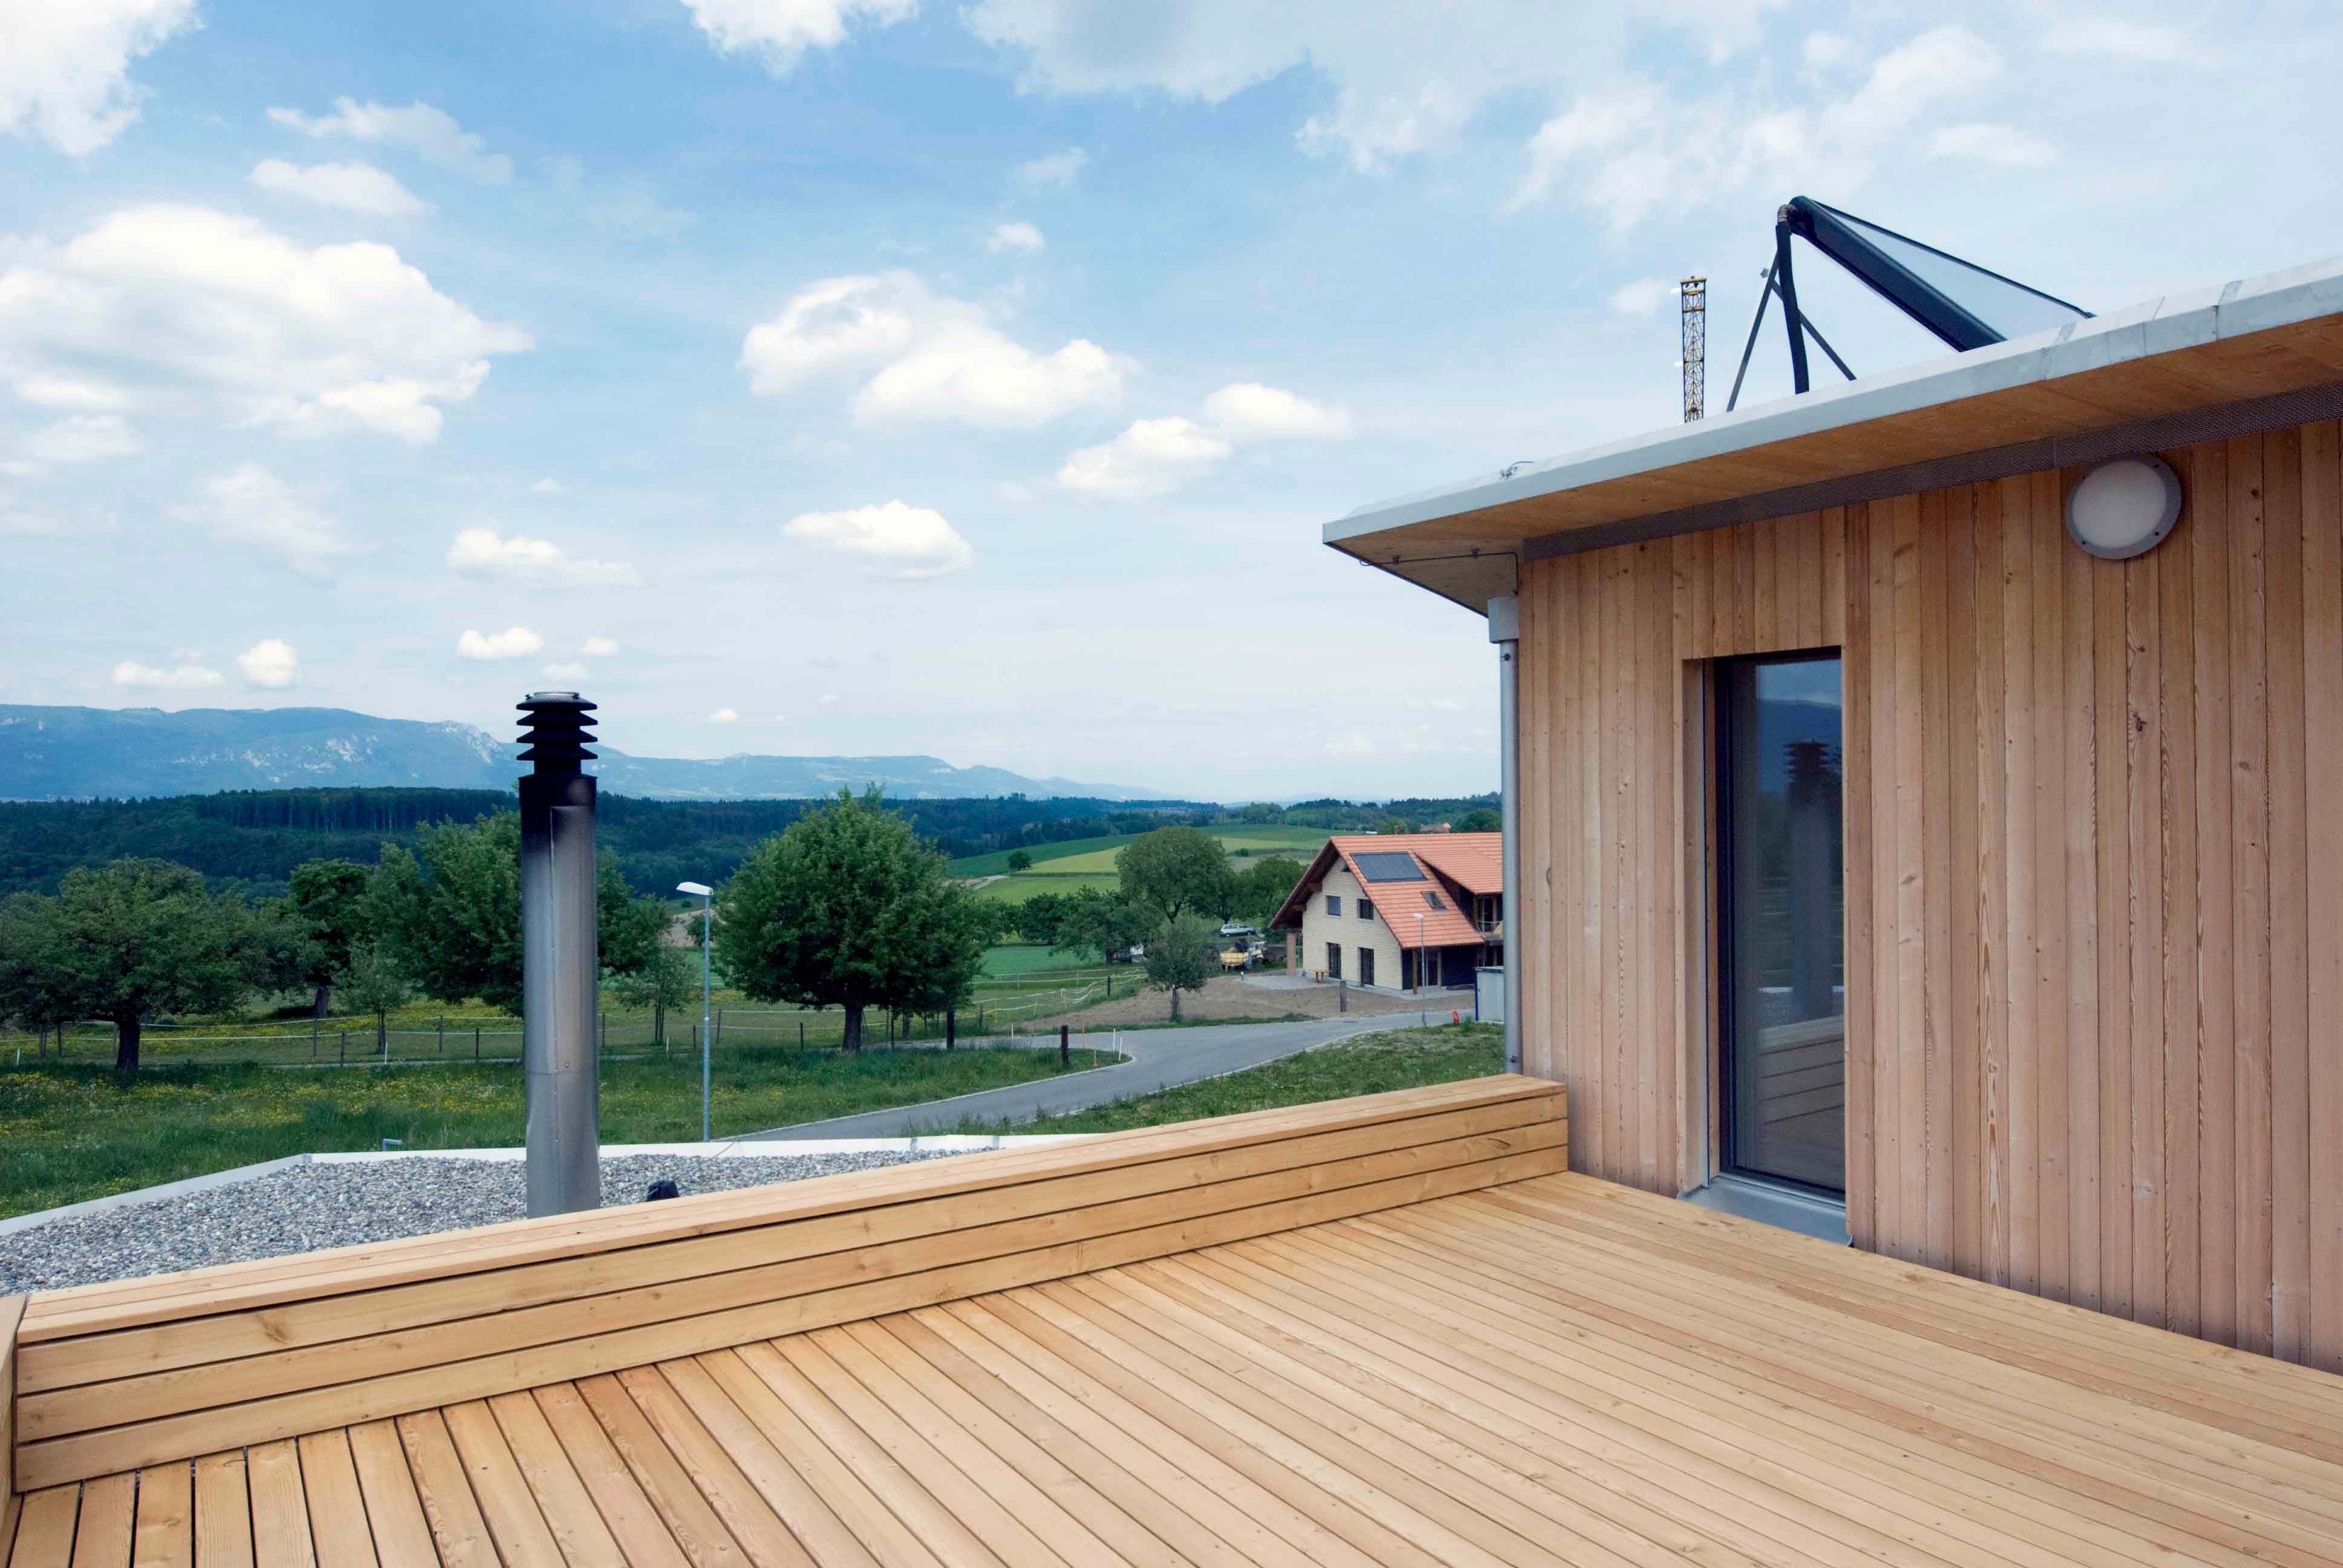 Architektur-Reportage Hessigkofen Sechseck Decke: Ausblick von der Holzterasse